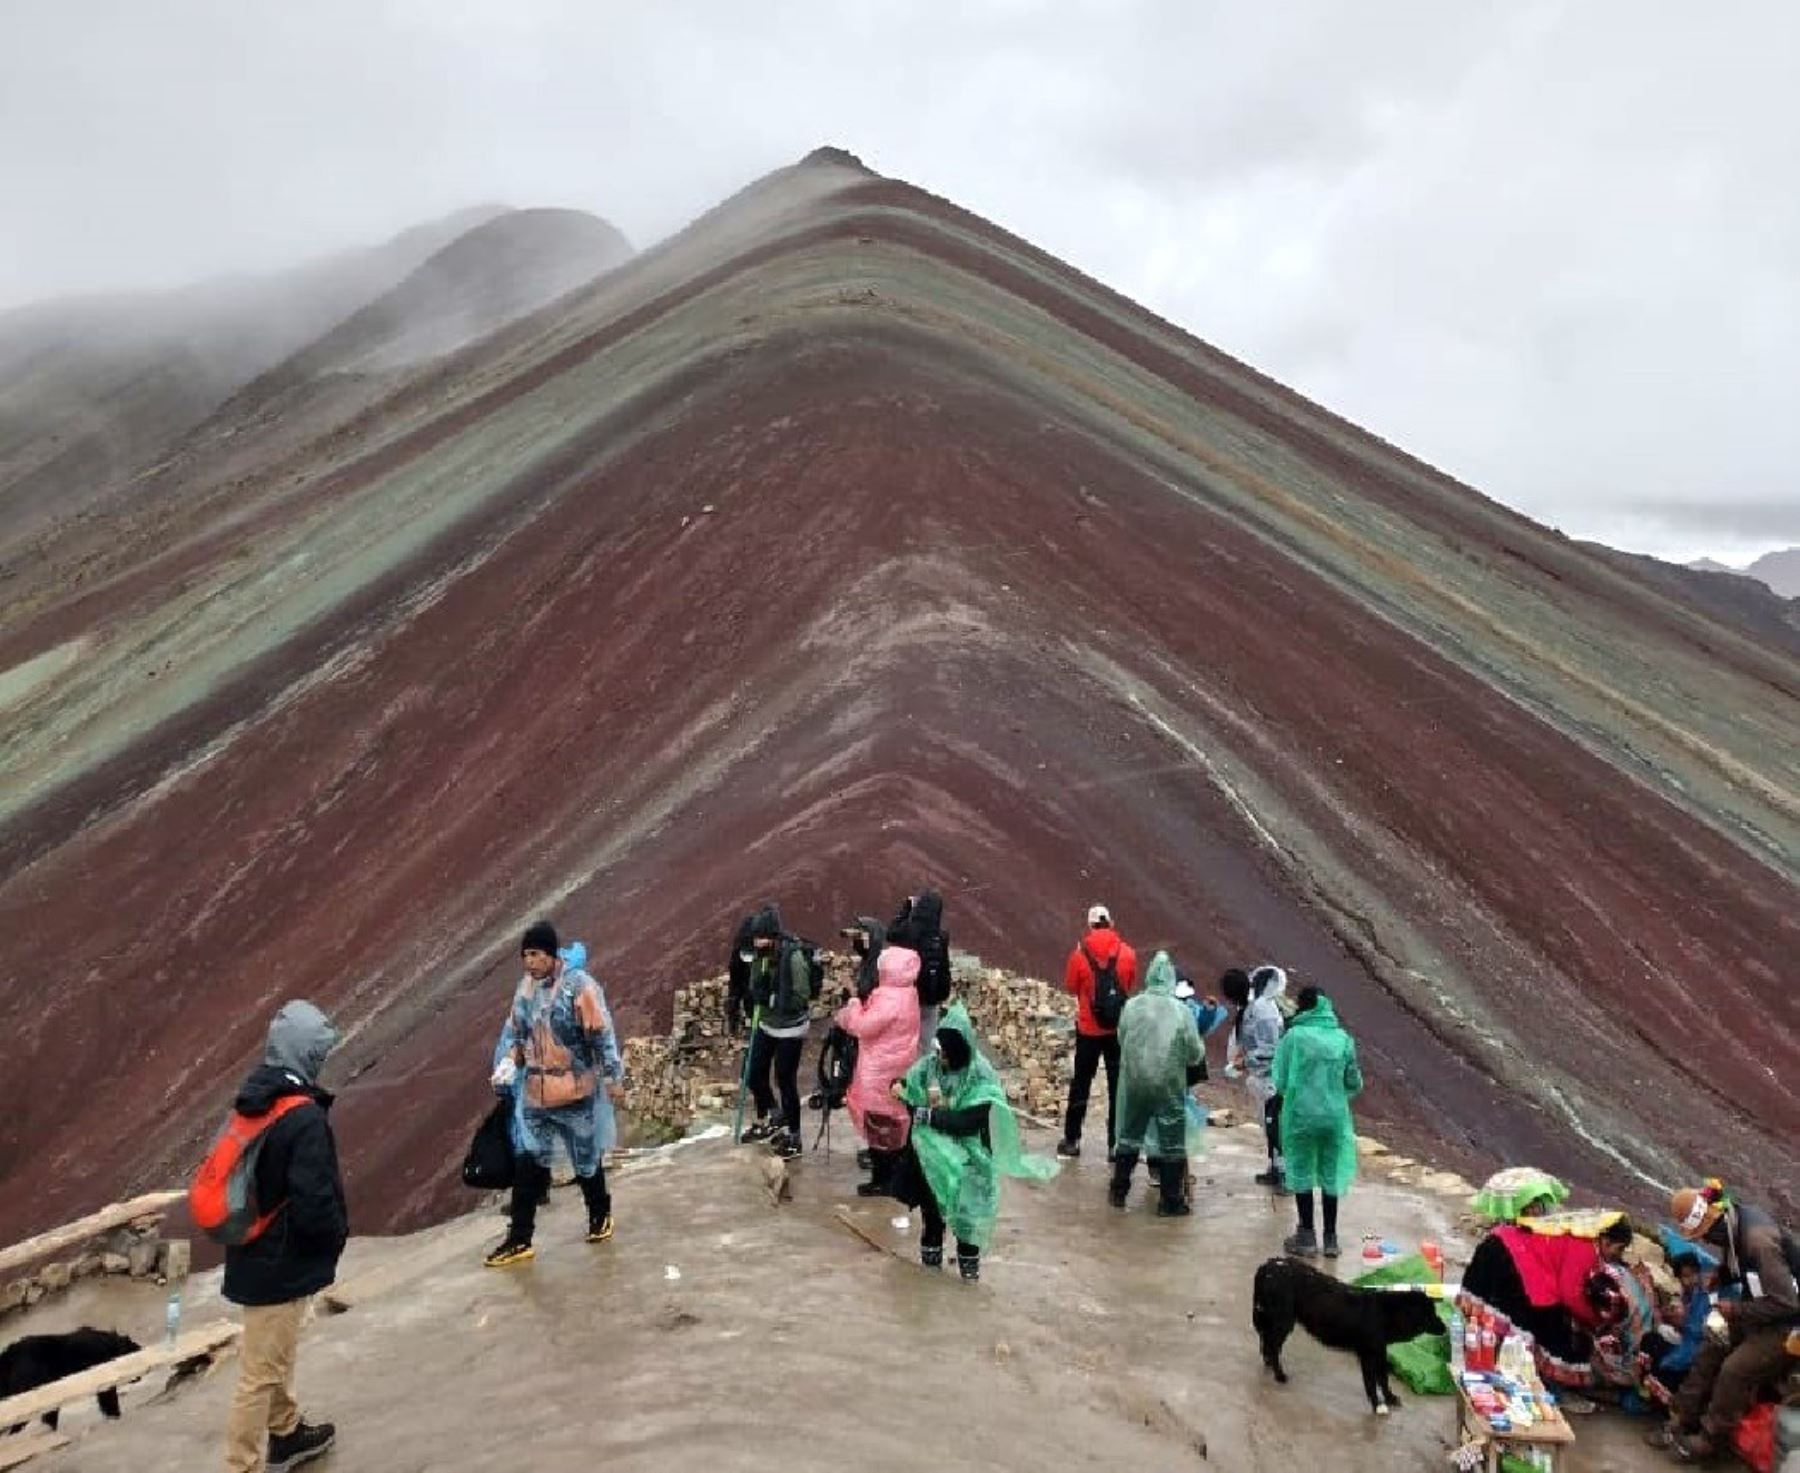 Un nuevo enfrentamiento entre comunidades del distrito de Cusipata obliga a suspender la visita a la montaña de Siete Colores o Vinicunca, uno de los principales atractivos de Cusco.